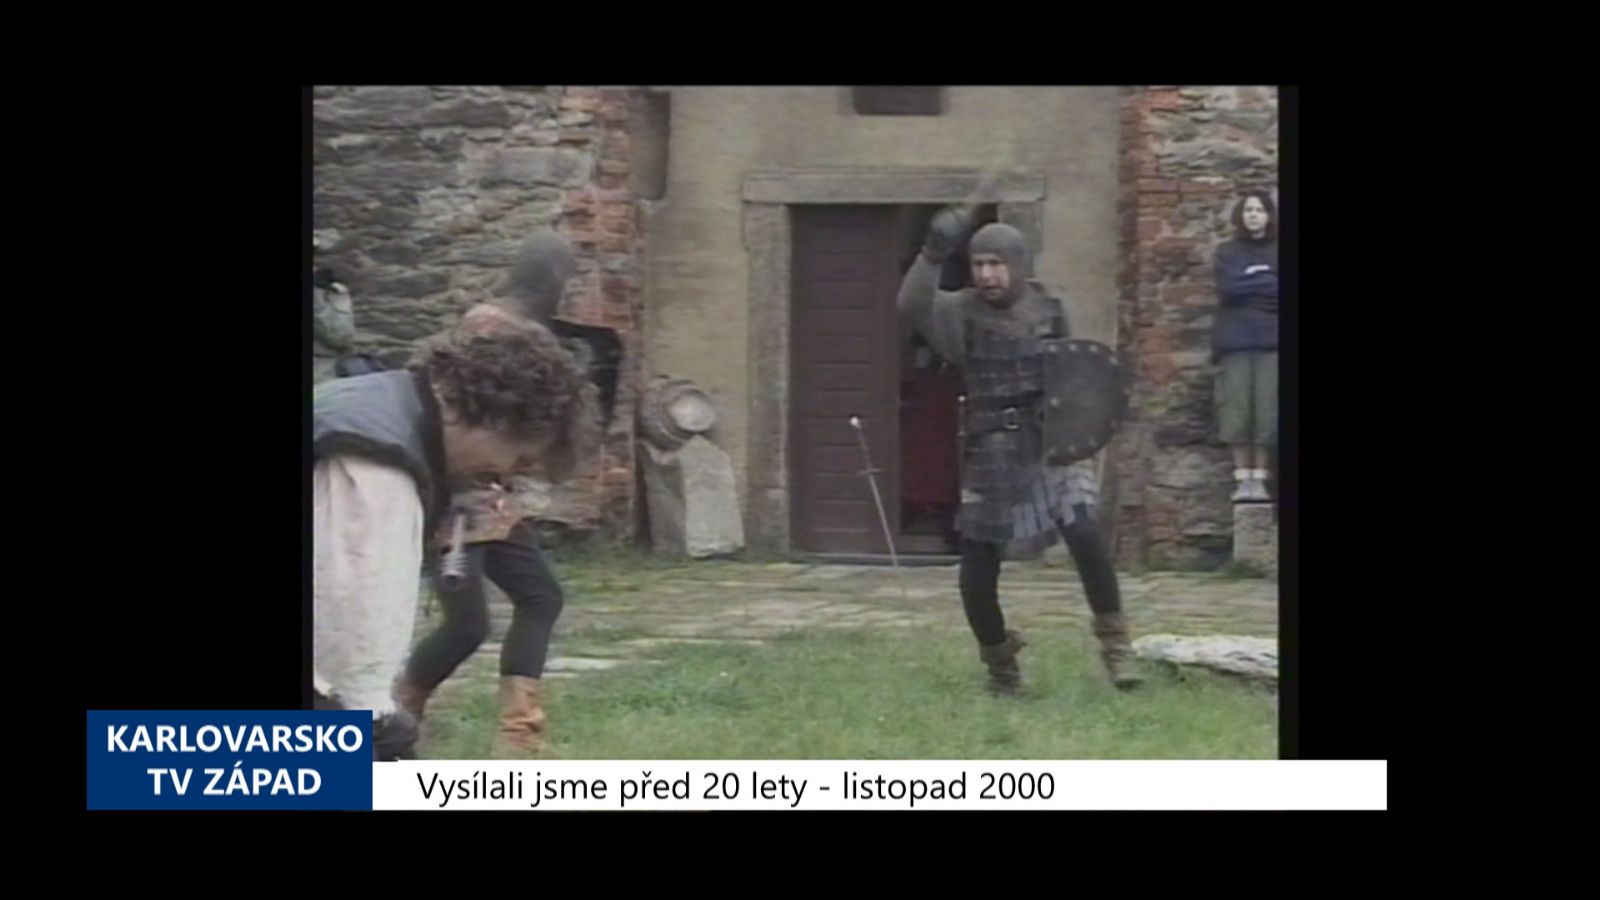 2000 – Cheb: Hrad letos navštívilo 23 tisíc turistů (TV Západ)